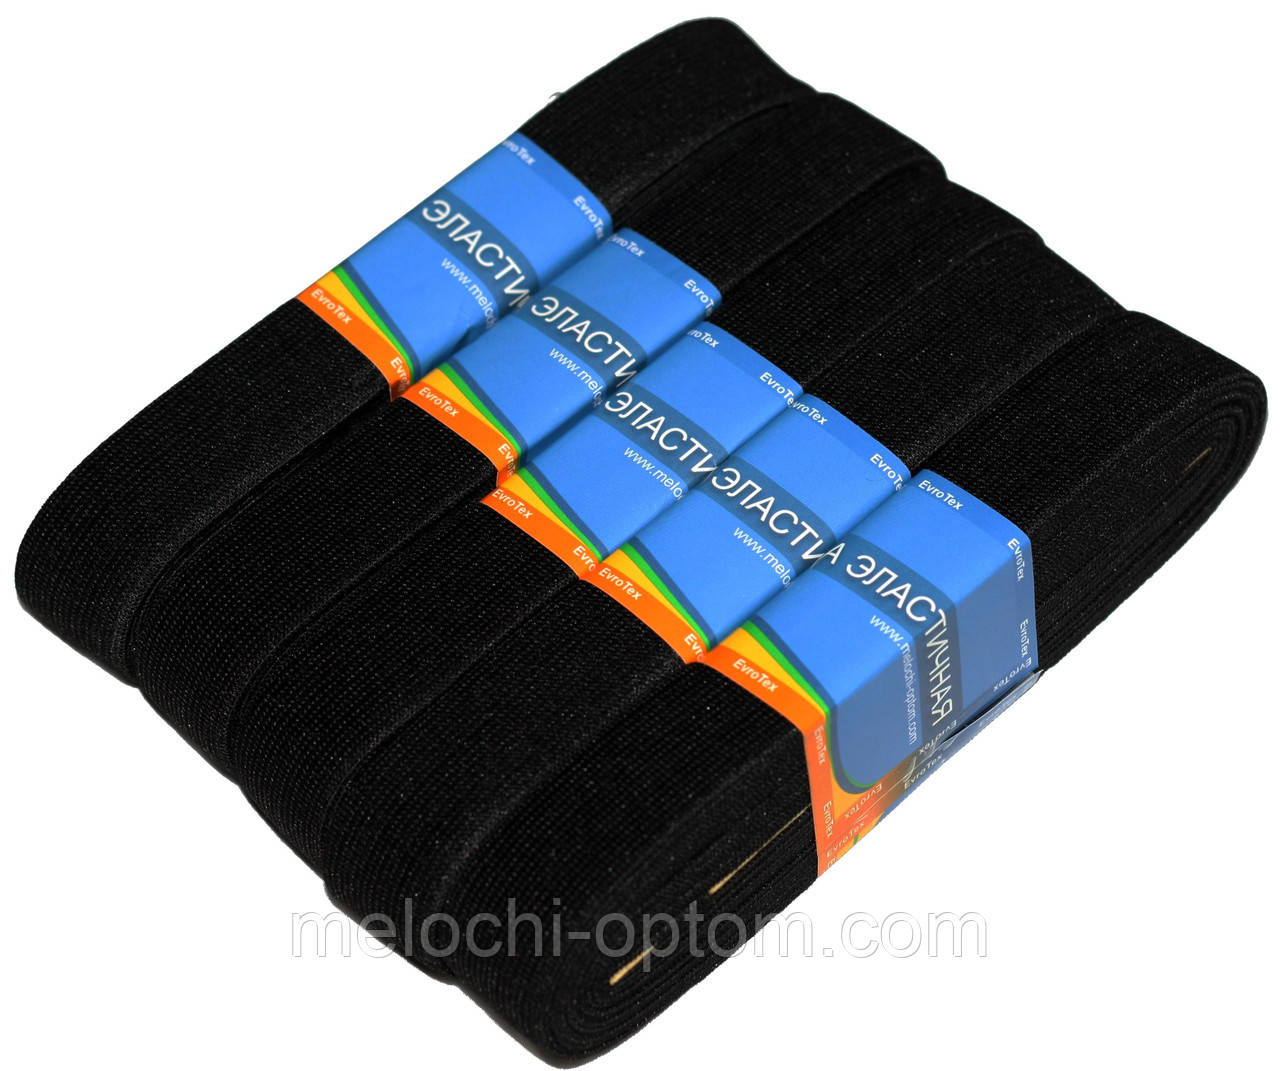 Гумки для одягу "EuroTextile" (30mm/5m) чорні, тасьма еластична поліестер